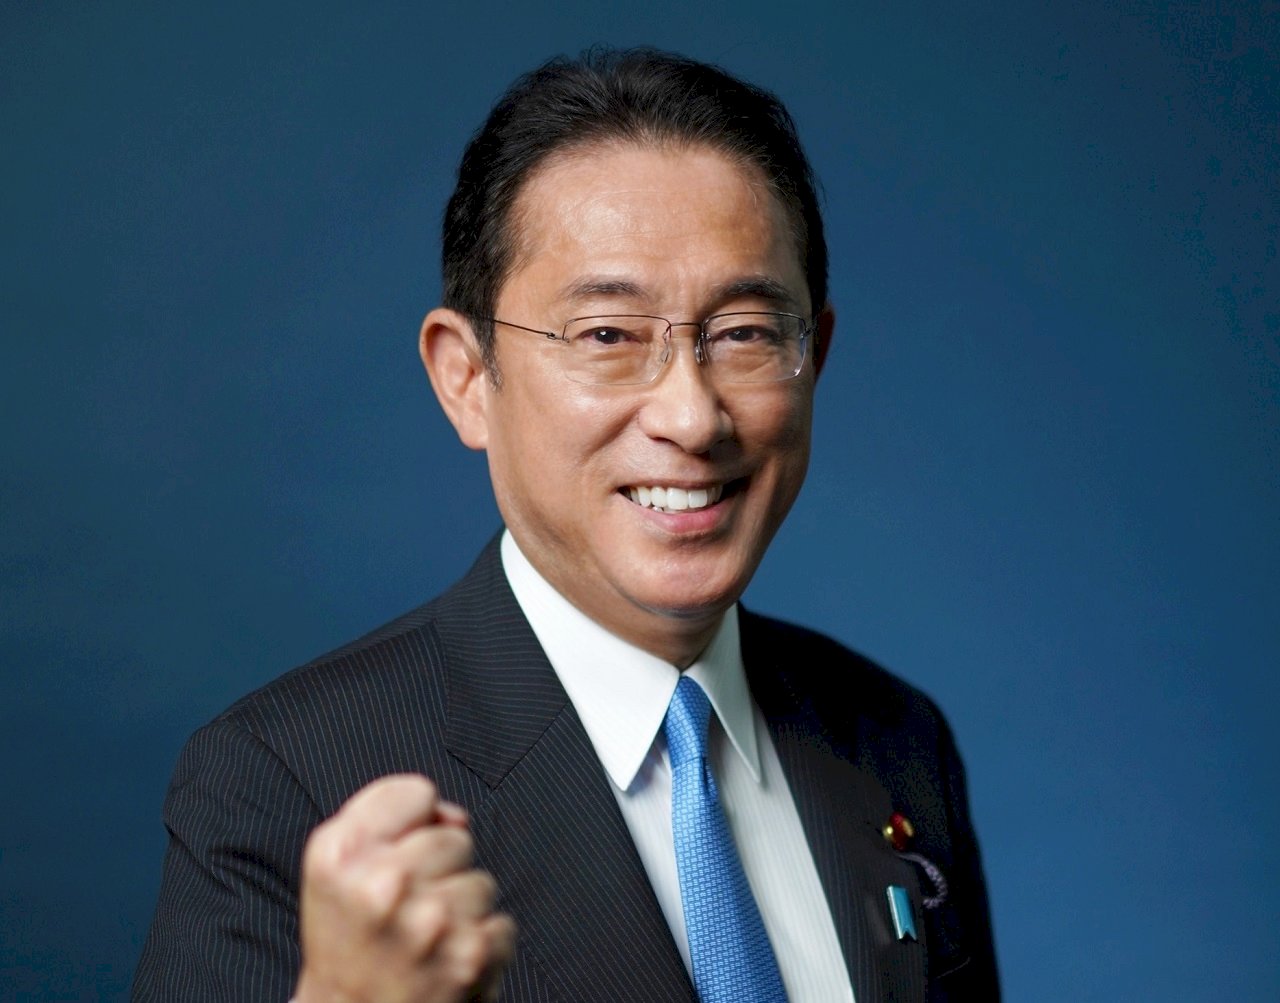 岸田文雄當選總裁 將帶領自民黨投入11月大選選戰